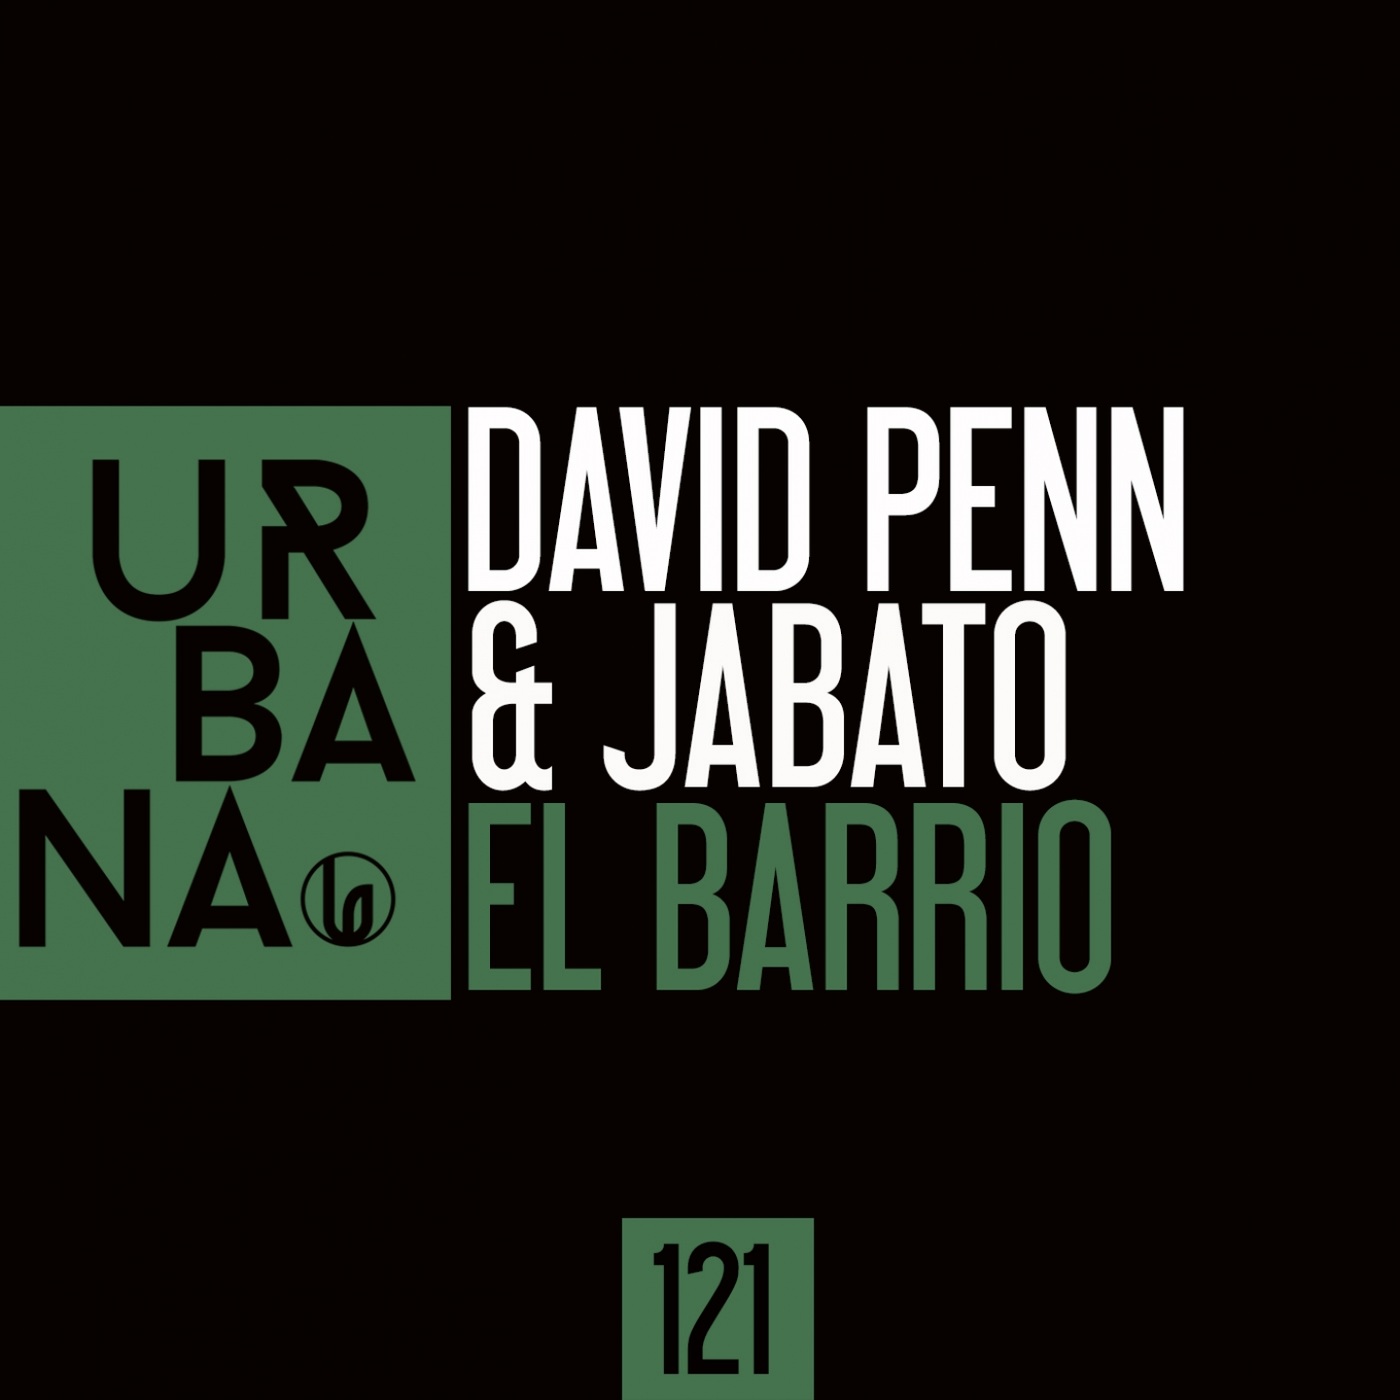 David Penn & Jabato - El Barrio / Urbana Recordings